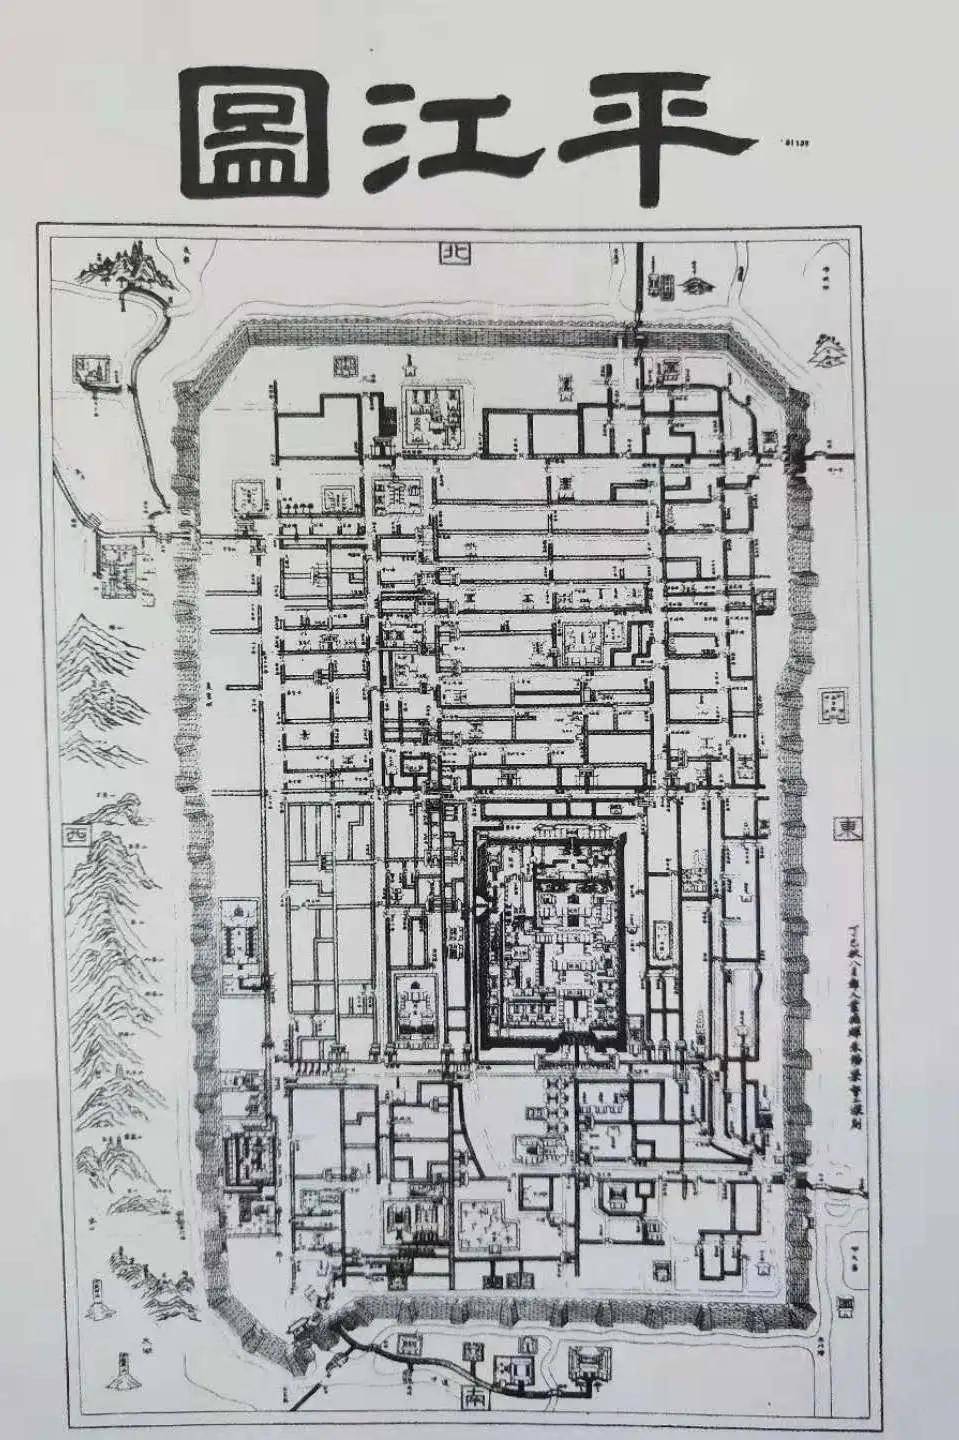 苏州古城门地图图片